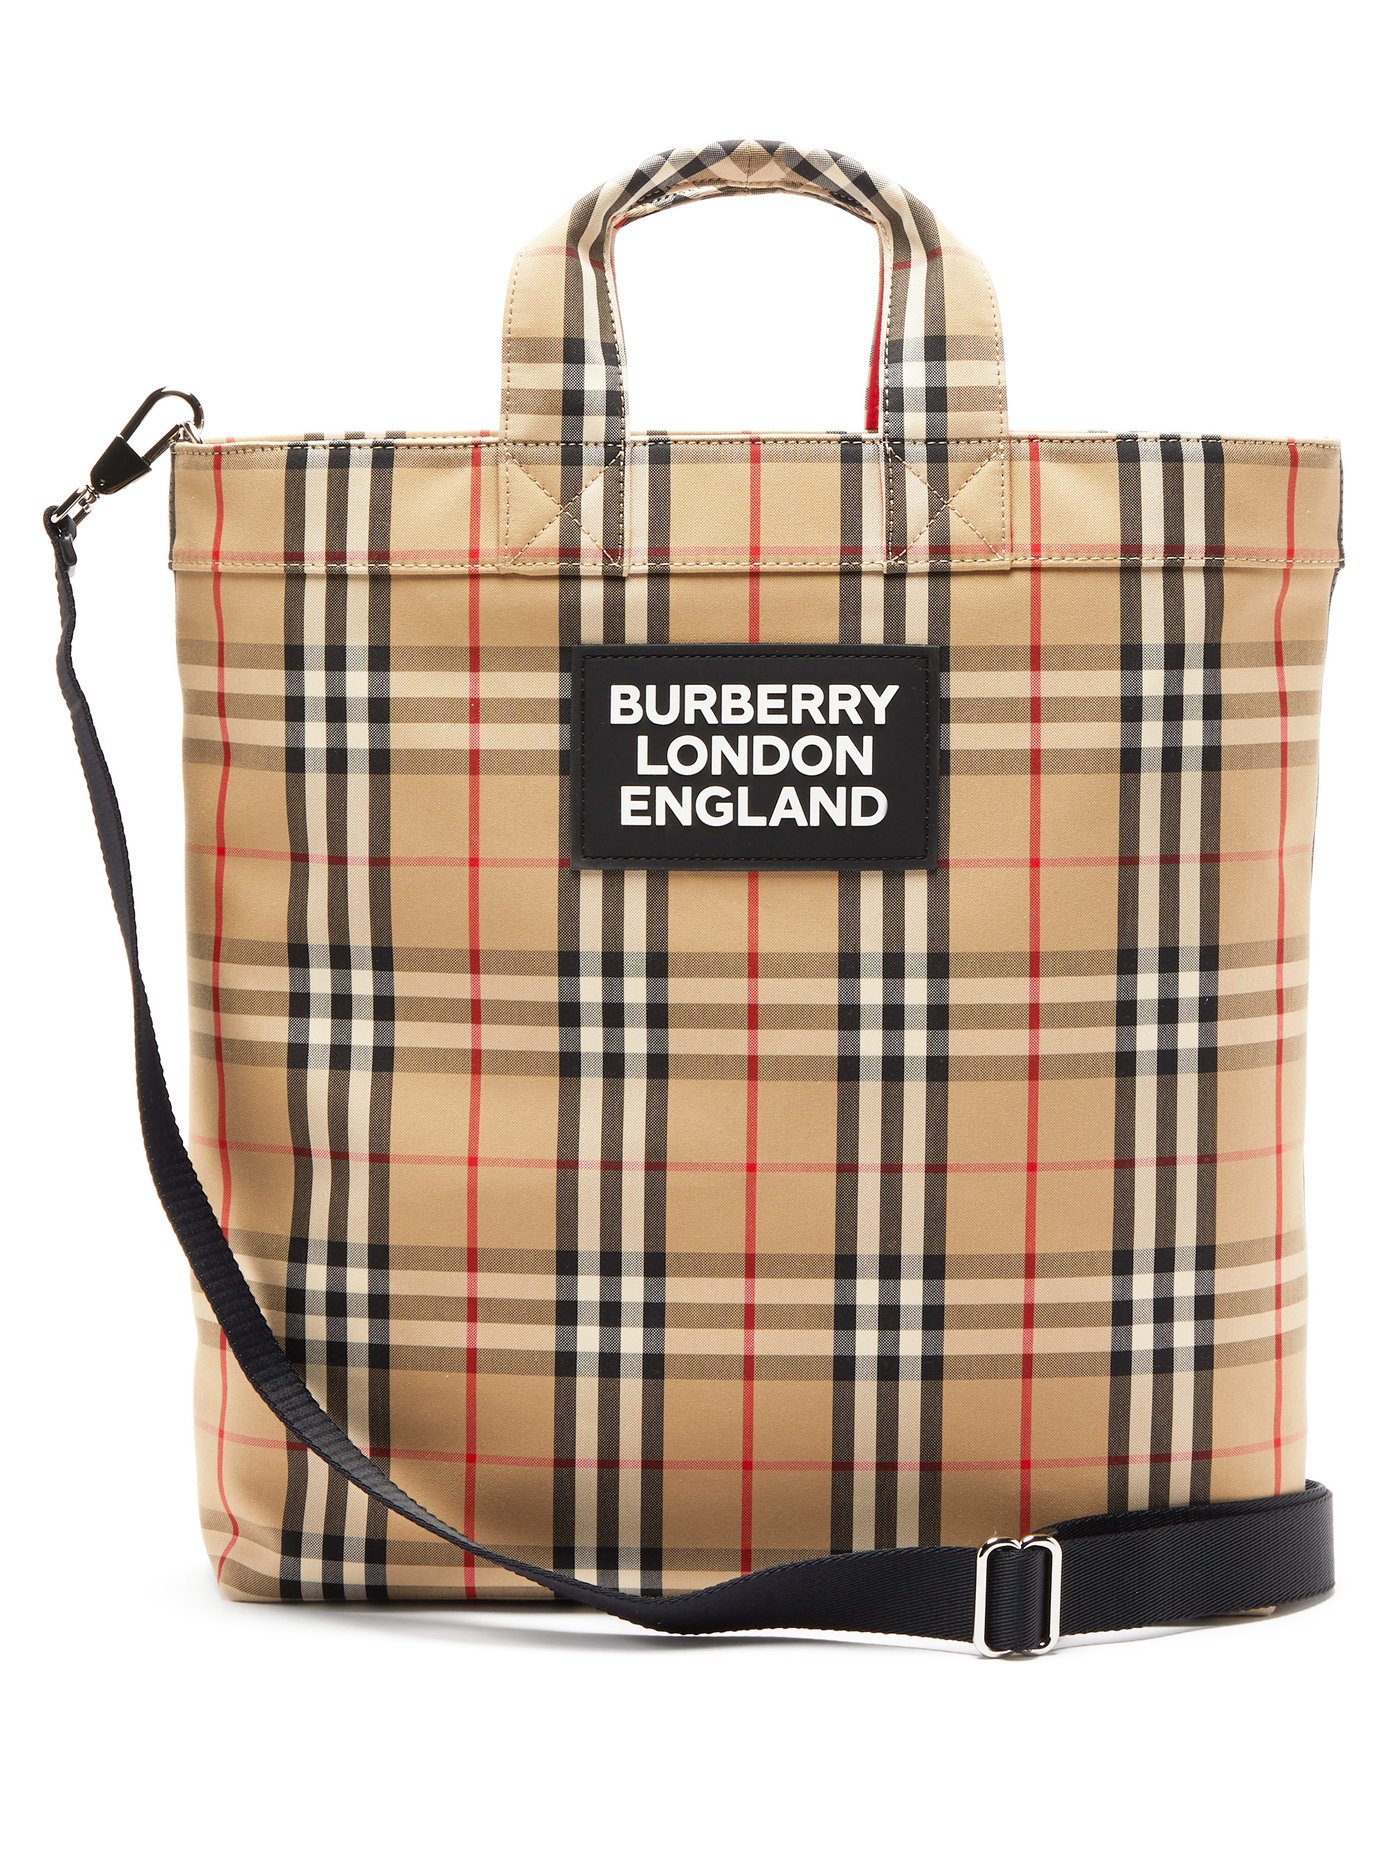 burberry bag vintage check